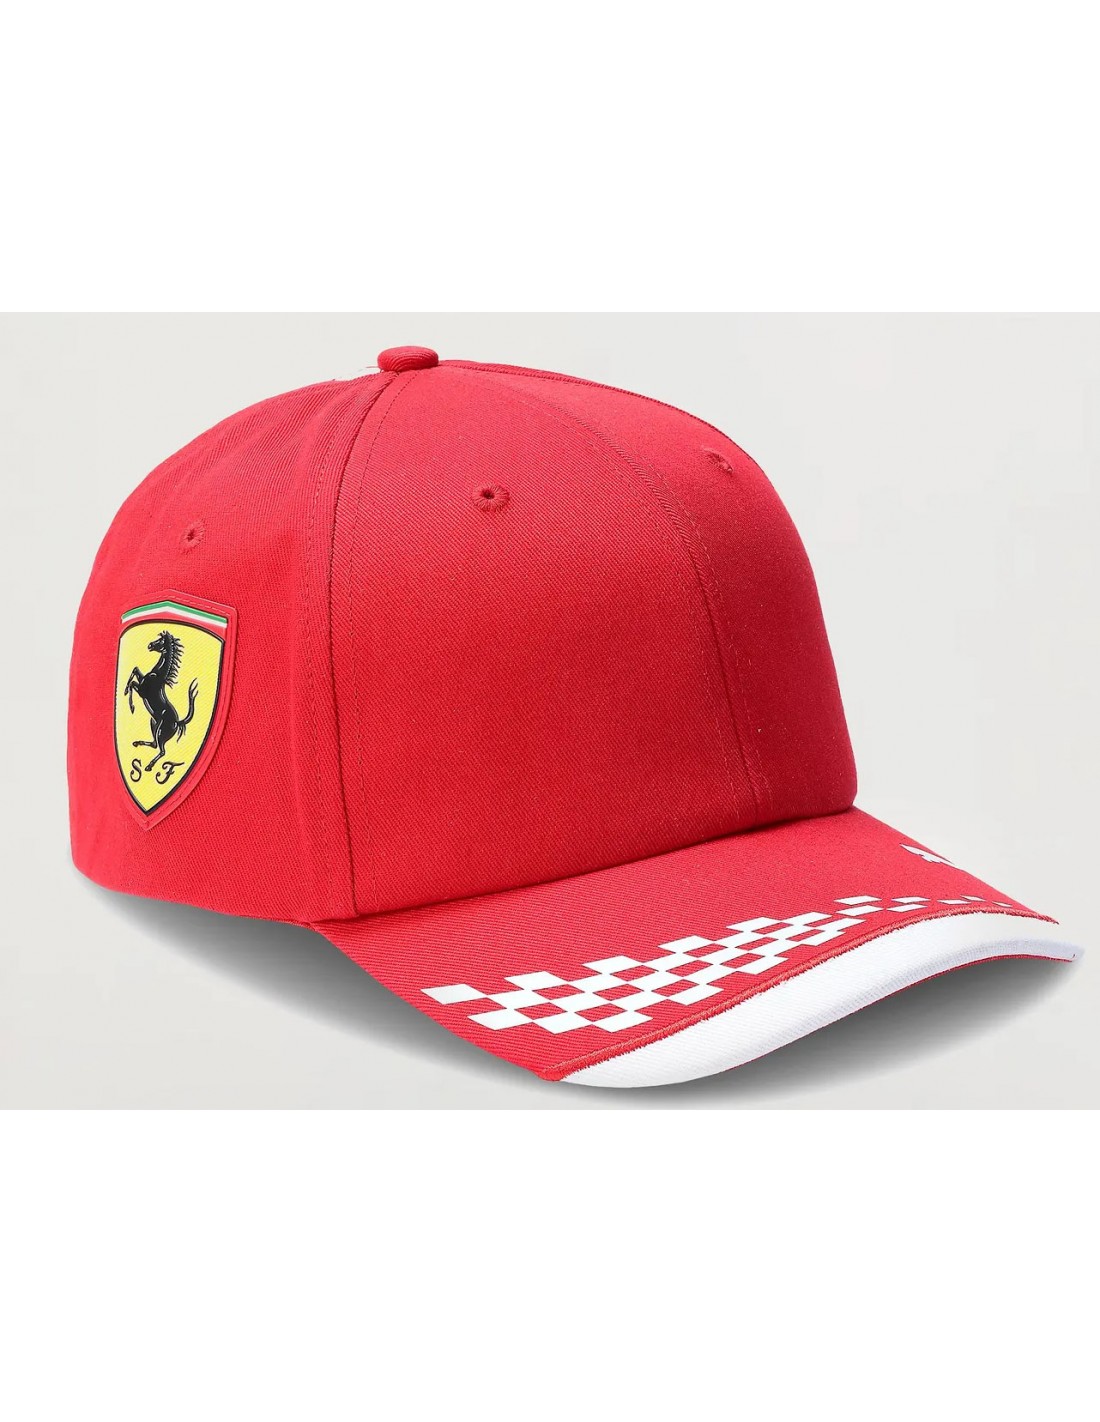 Gorra Roja Del Equipo Scuderia Ferrari F1 2021 